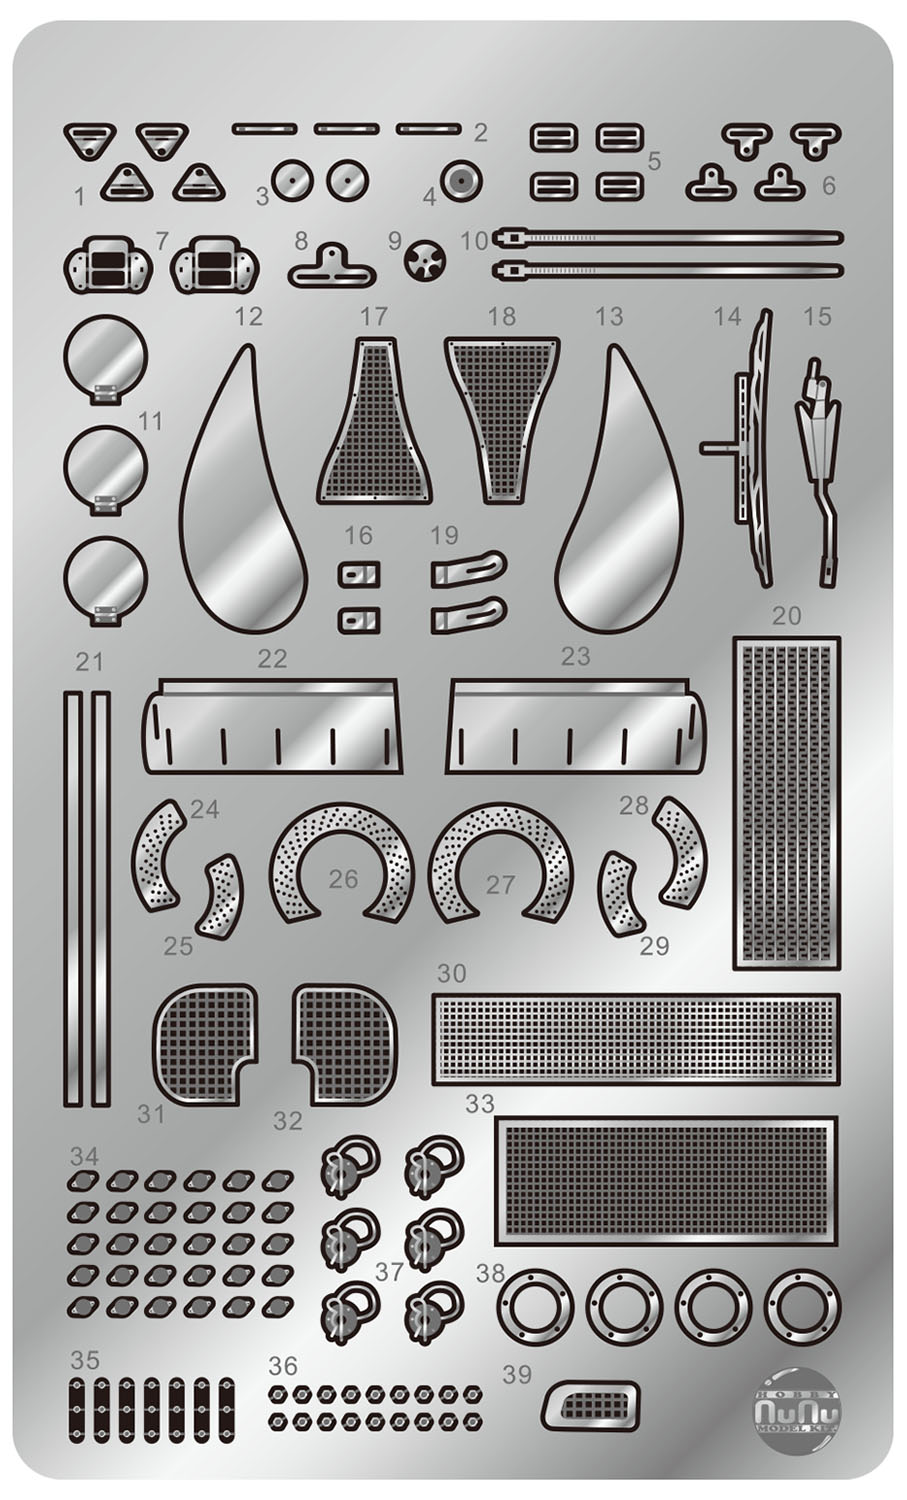 Detail-Up Parts for 1/24 PORSCHE 935 K3 '80 LM